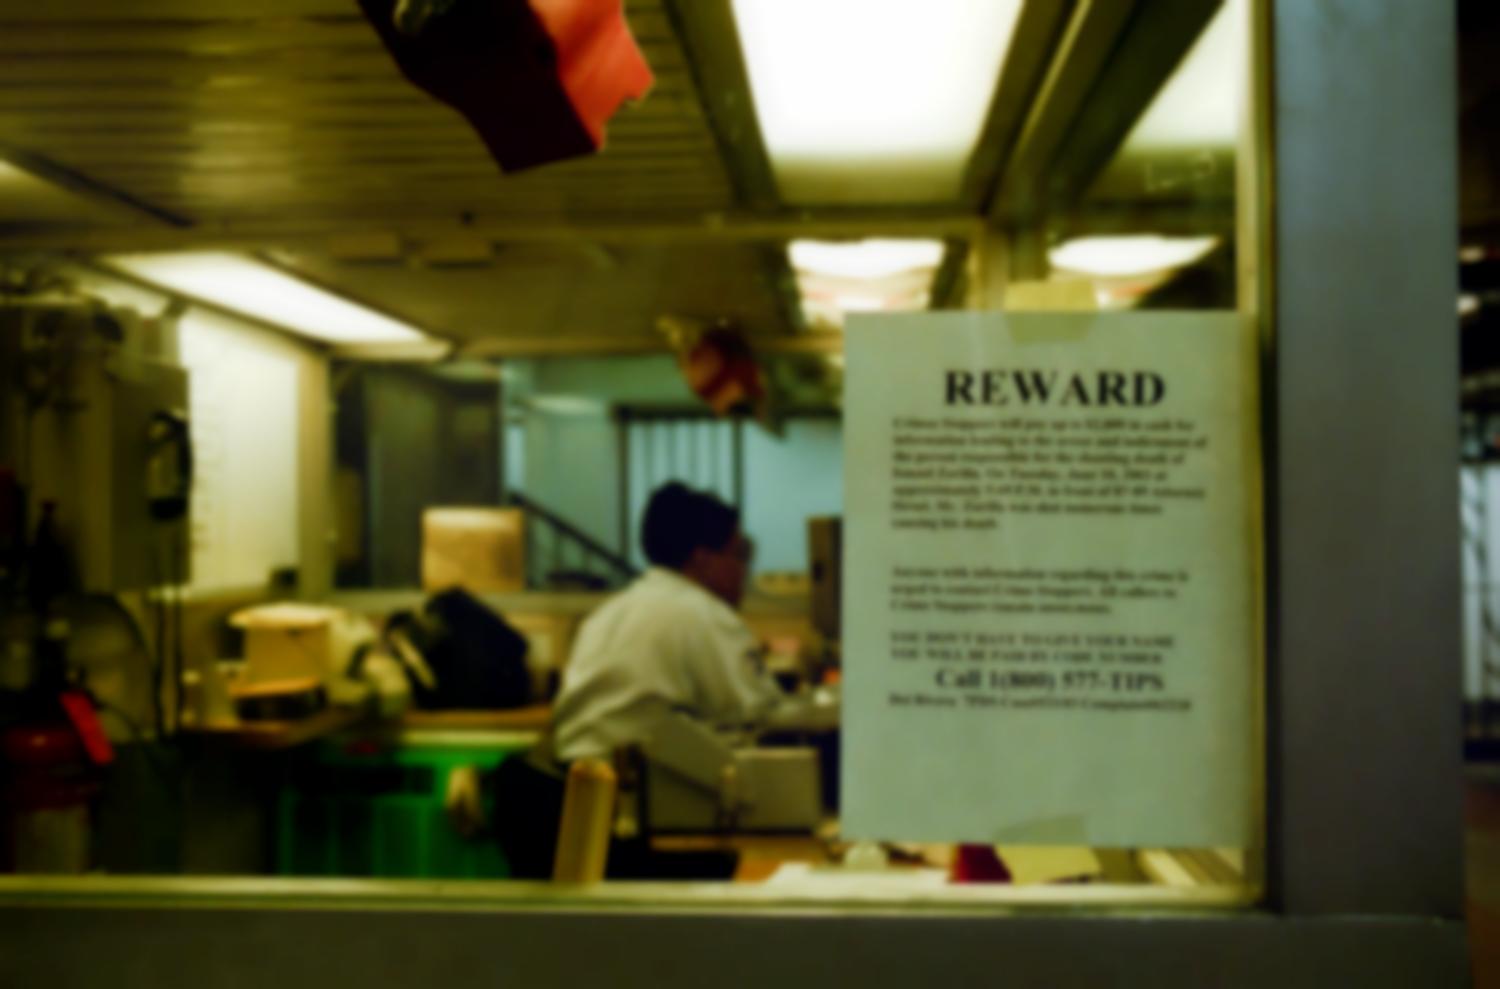 Avis de recherche sur la vitre d'un bureau ou d'une loge de concierge : une récompense est proposée par les Crime Stoppers en échange d'informations sur un meurtre. New York, juin 2003.